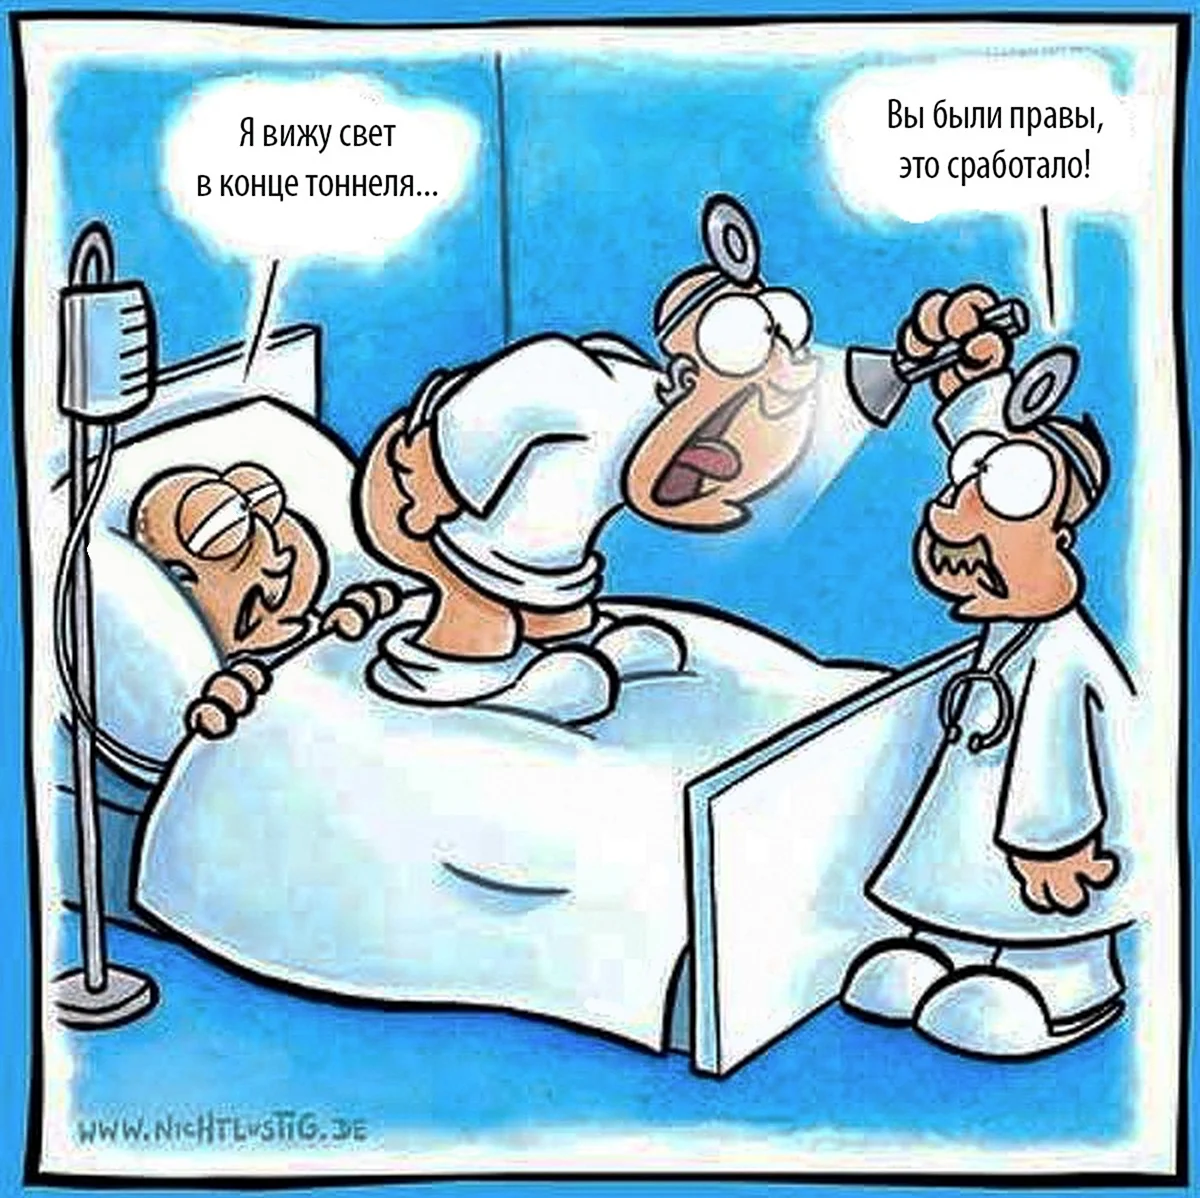 Медицинский юмор в картинках. Прикольная картинка